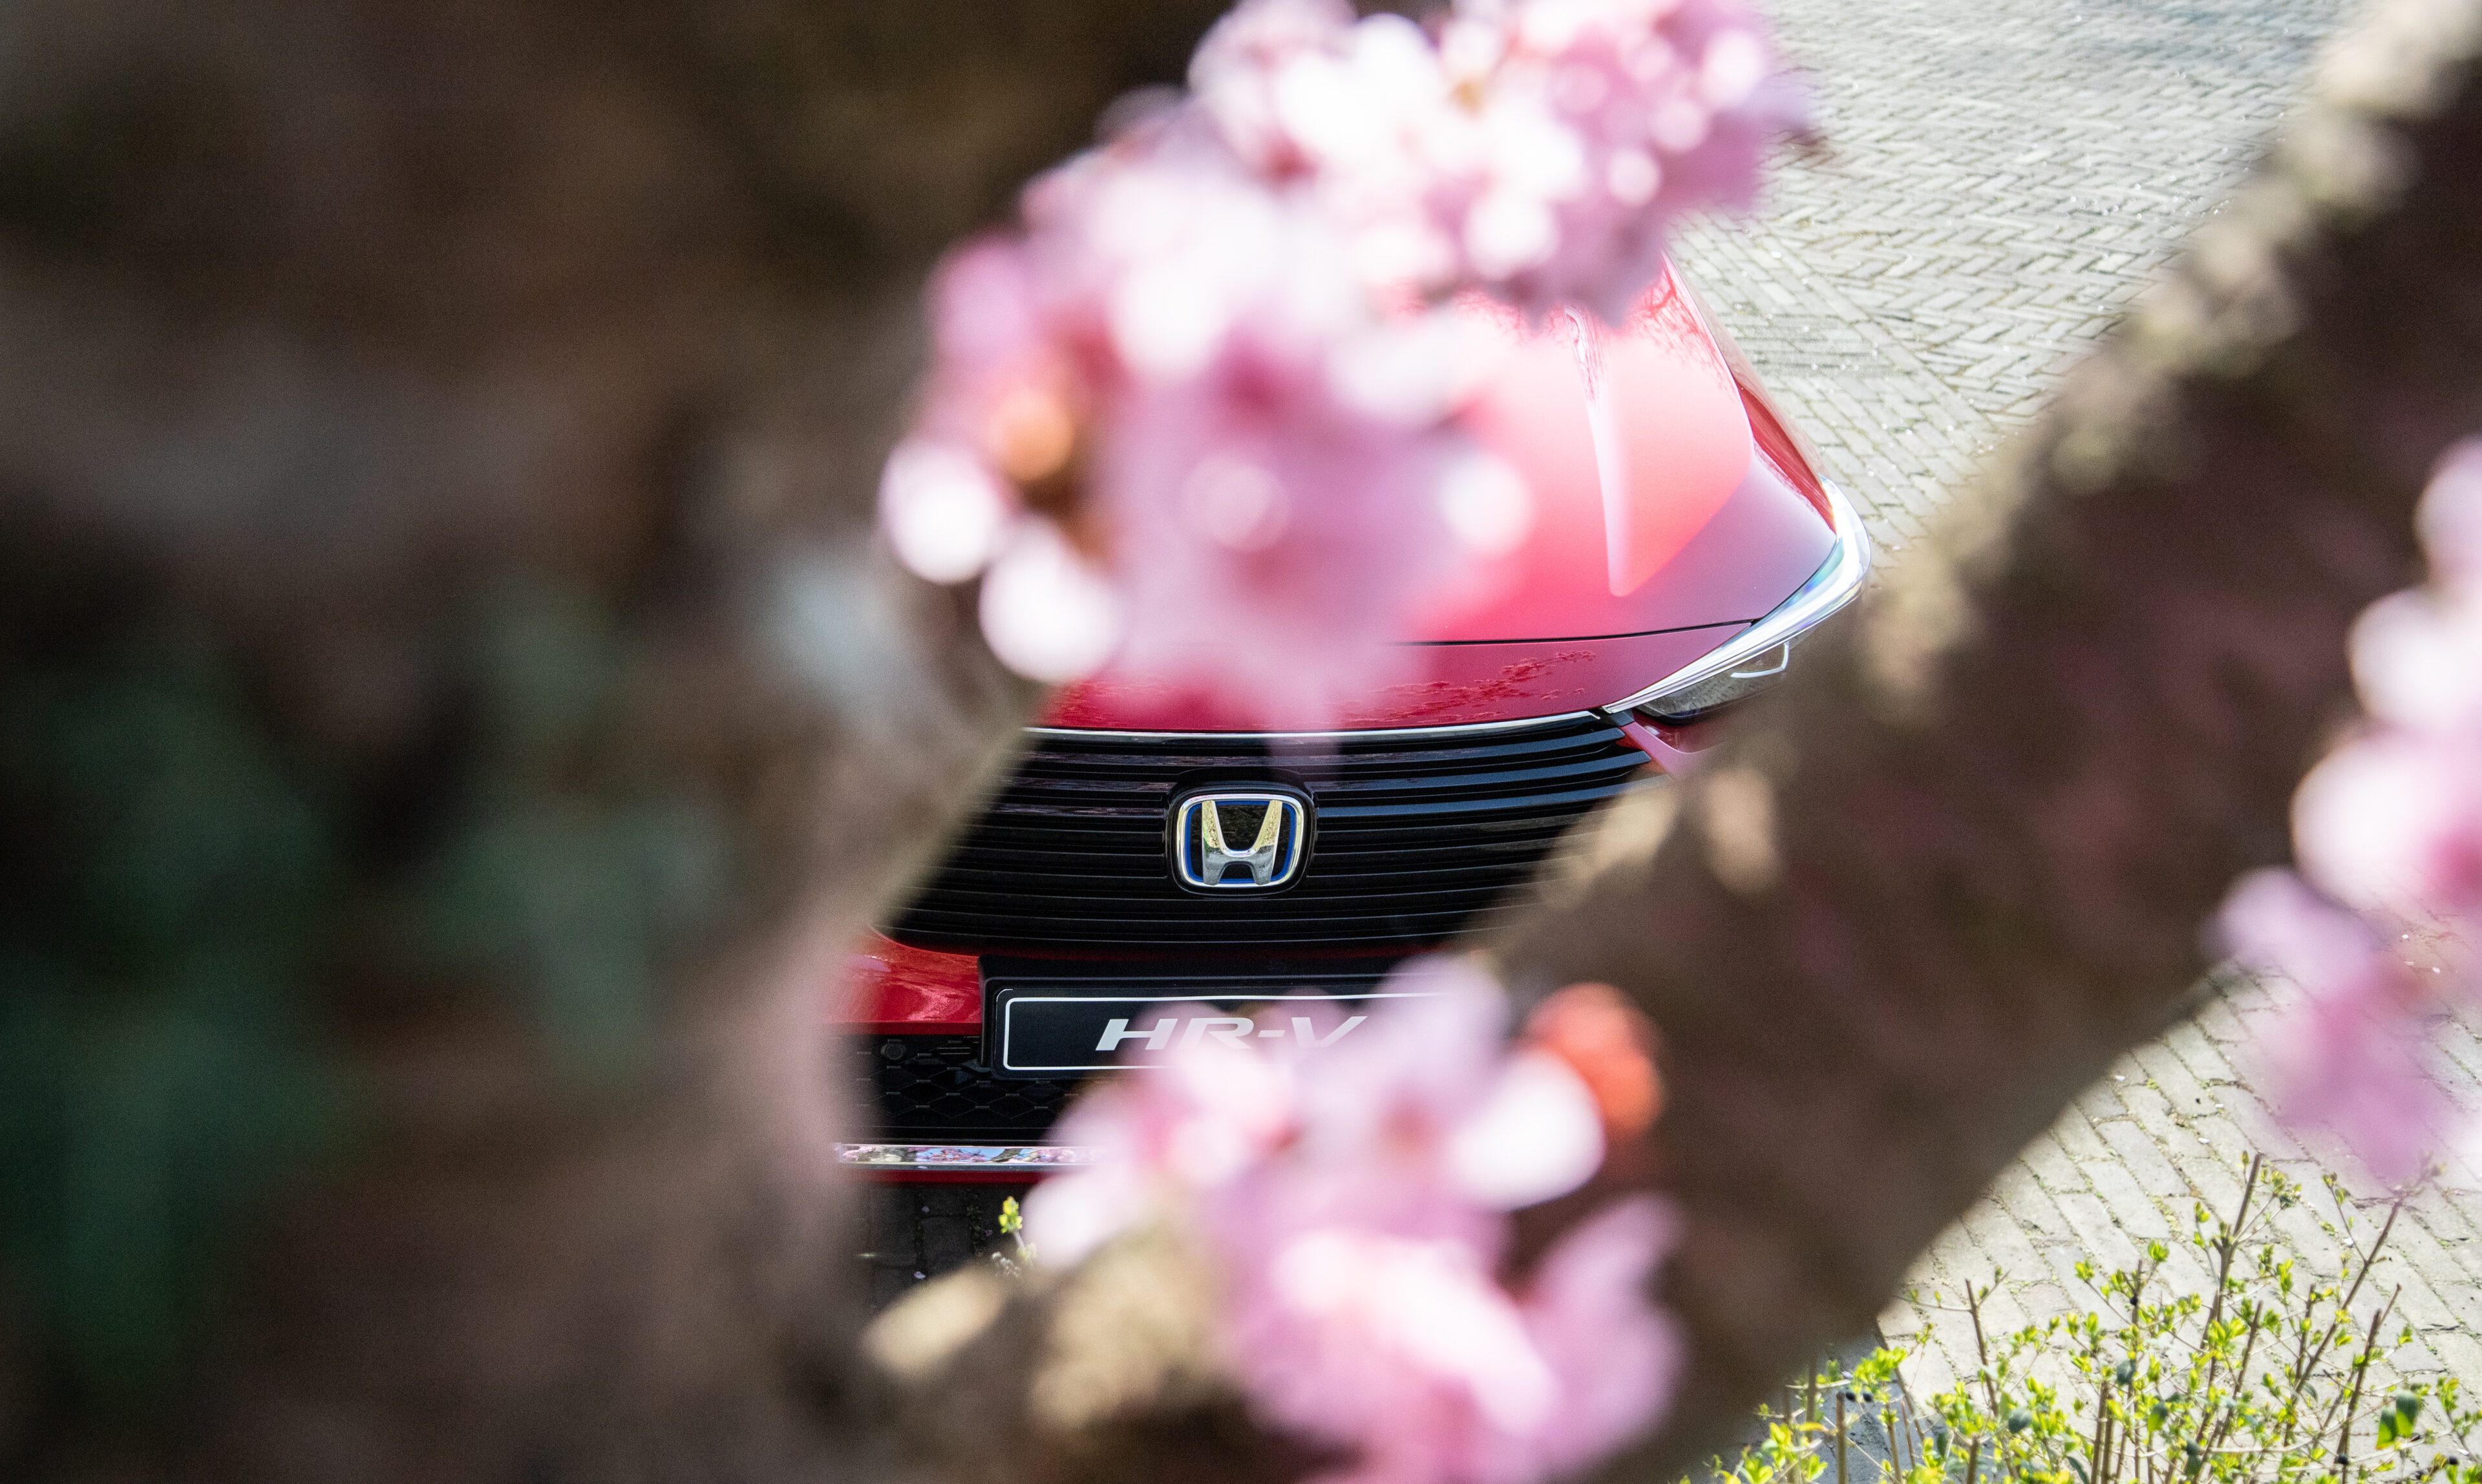 De naadloze, strakke designfilosofie die Honda toepast maakt de HR-V een ware verschijning